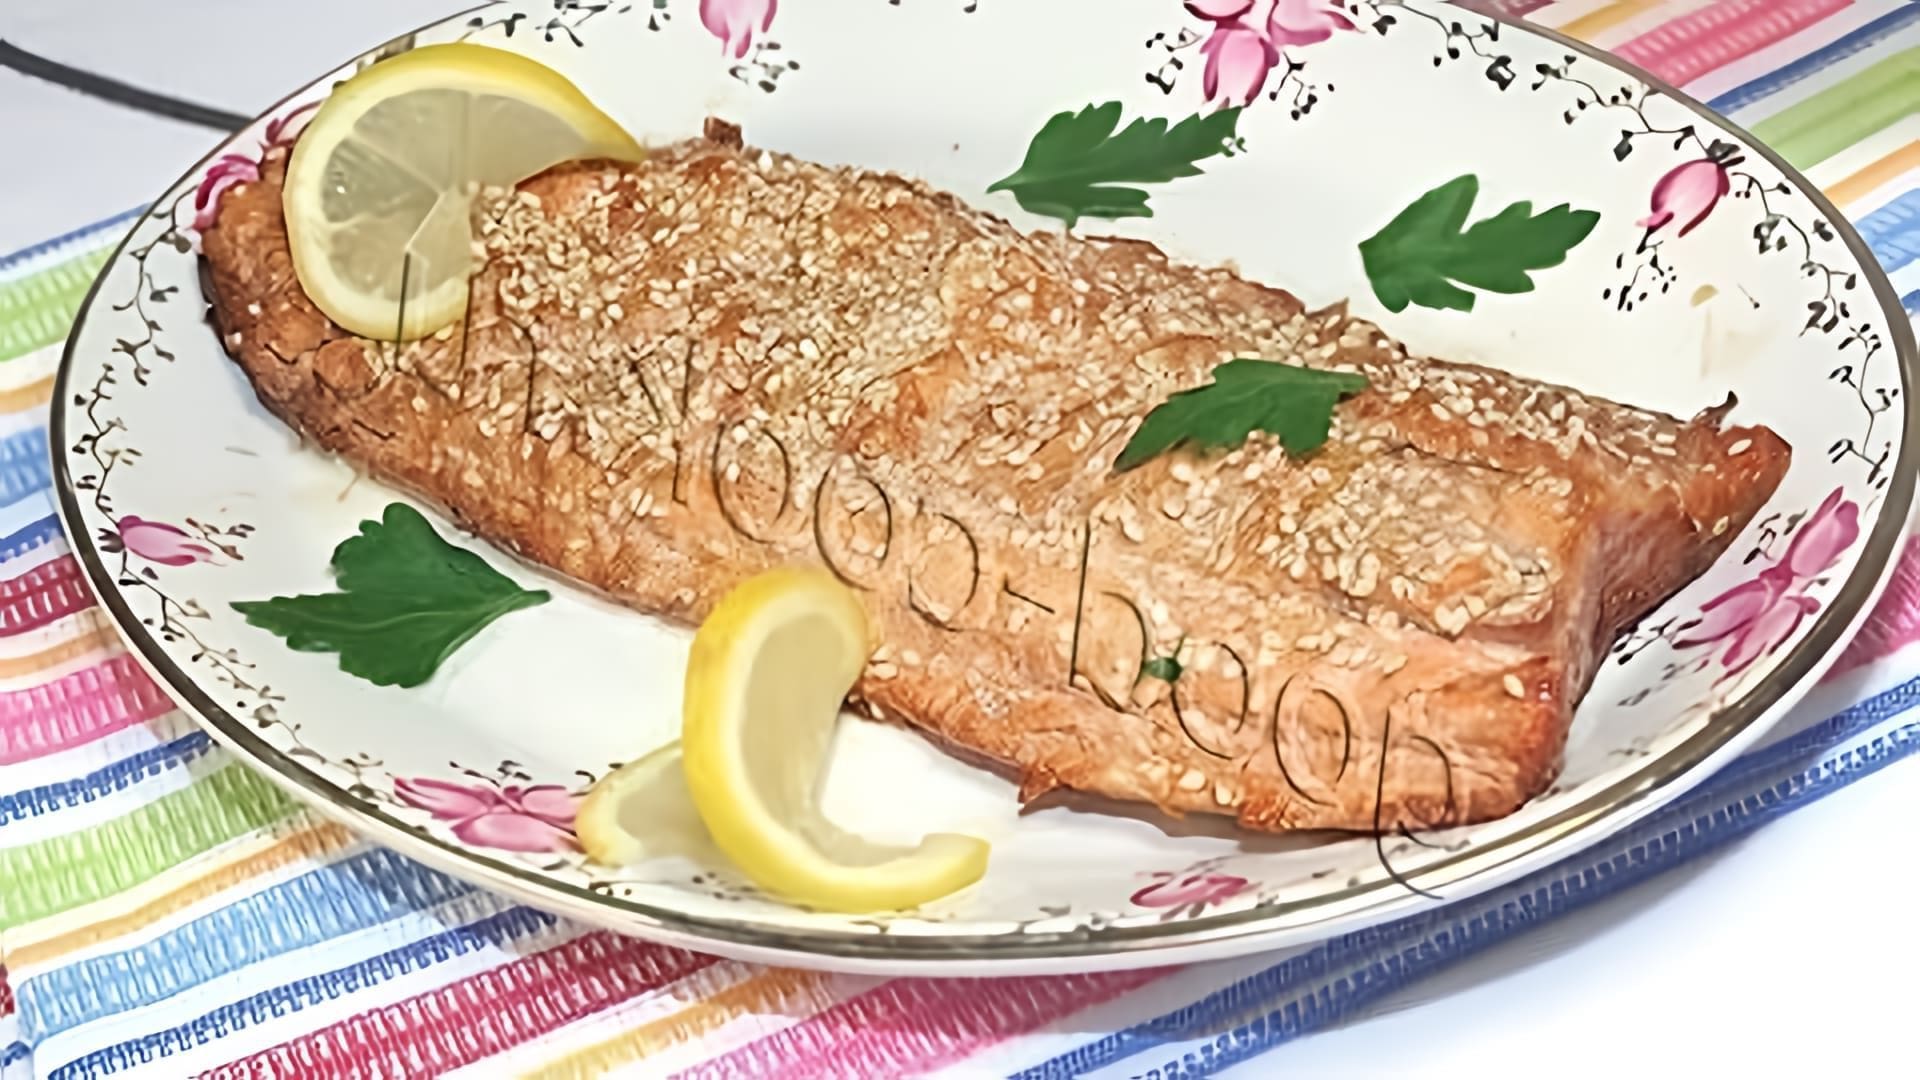 В данном видео демонстрируется рецепт приготовления лосося, запеченного под соевым соусом